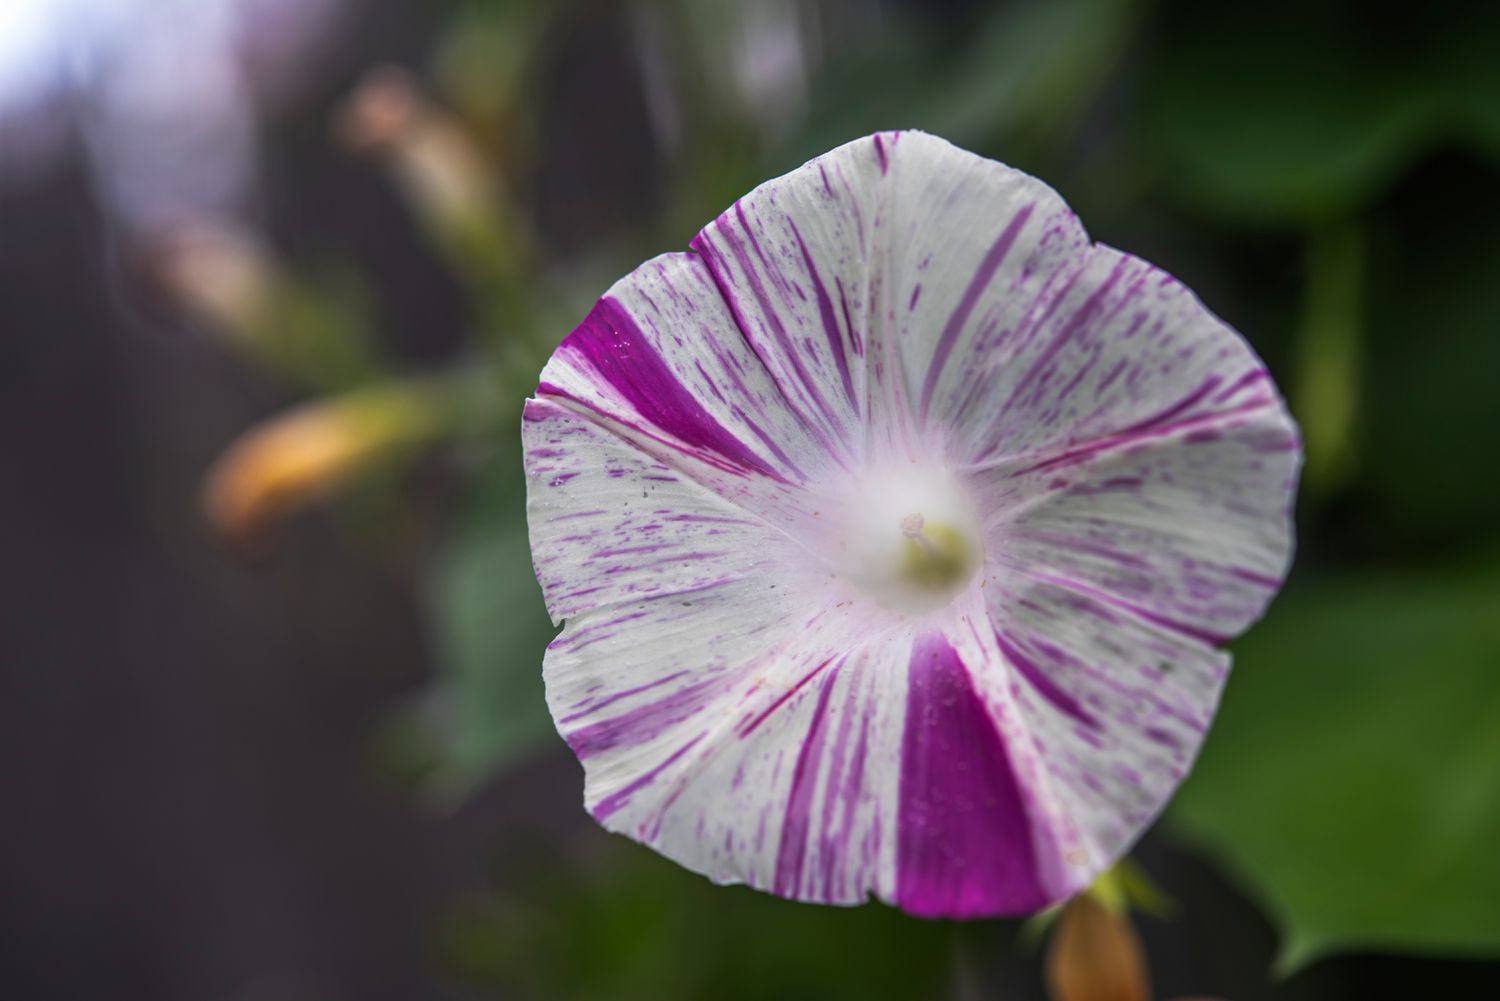 Morgenlatte mit weiß und violett gestreifter Blüte in Großaufnahme